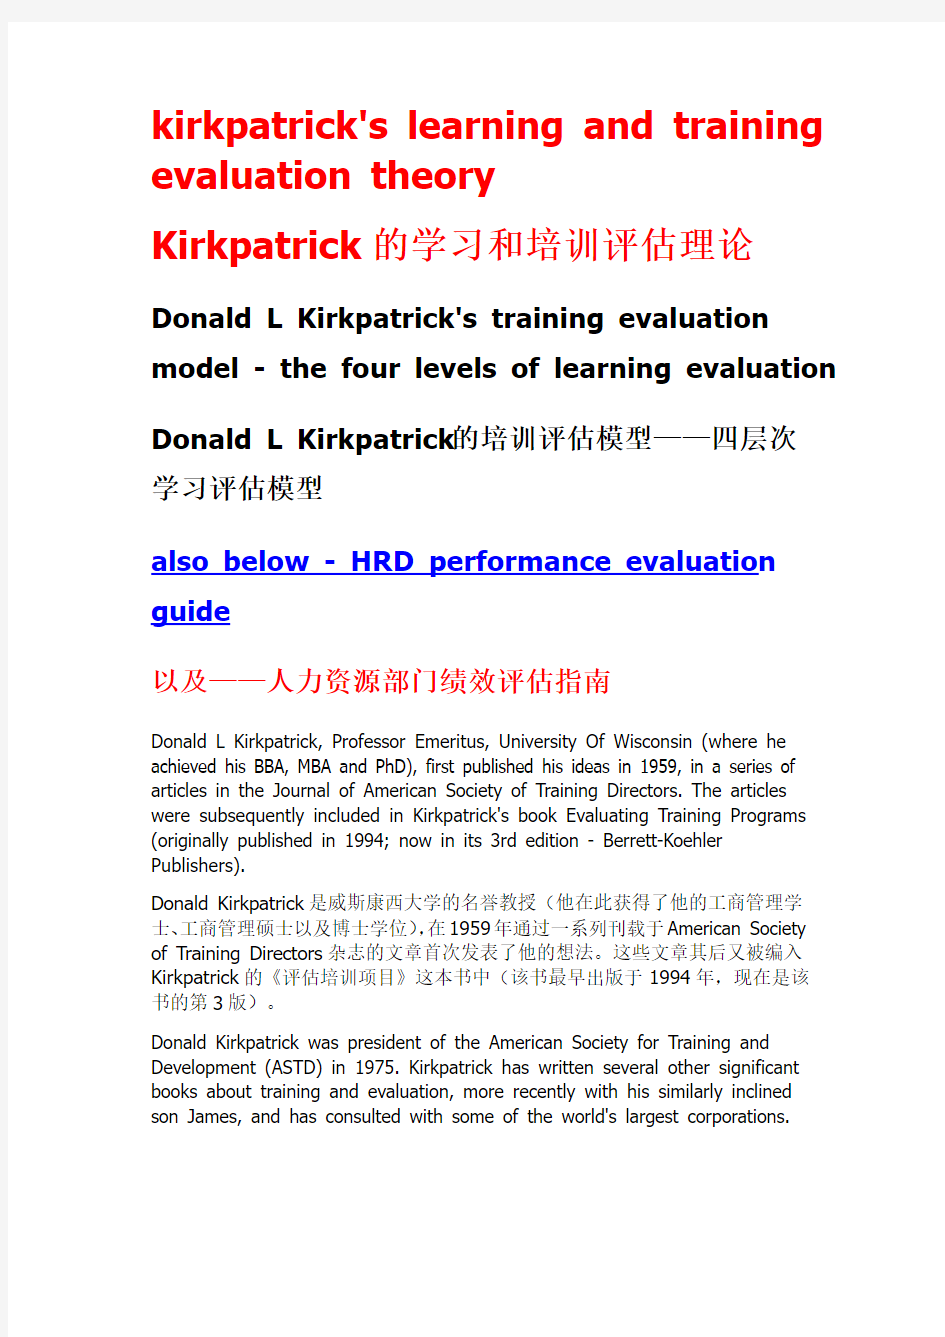 kirkpatrick - Training Evaluation